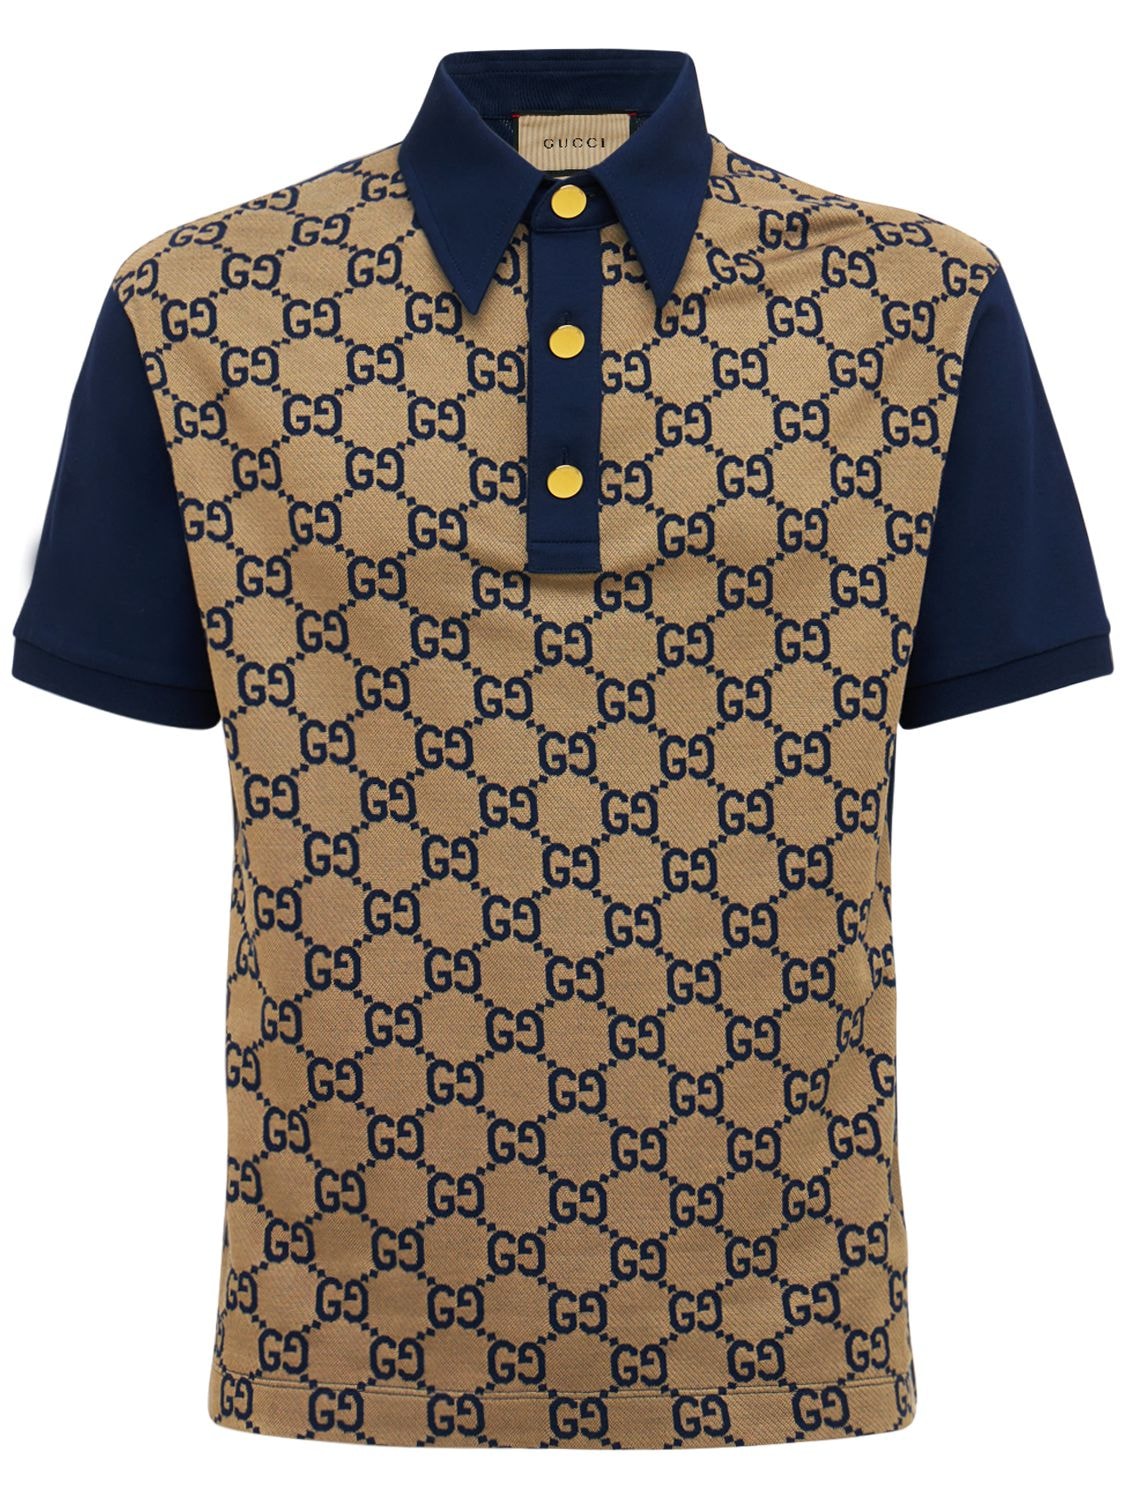 GUCCI Maxi Gg Silk & Cotton Polo Shirt for Men